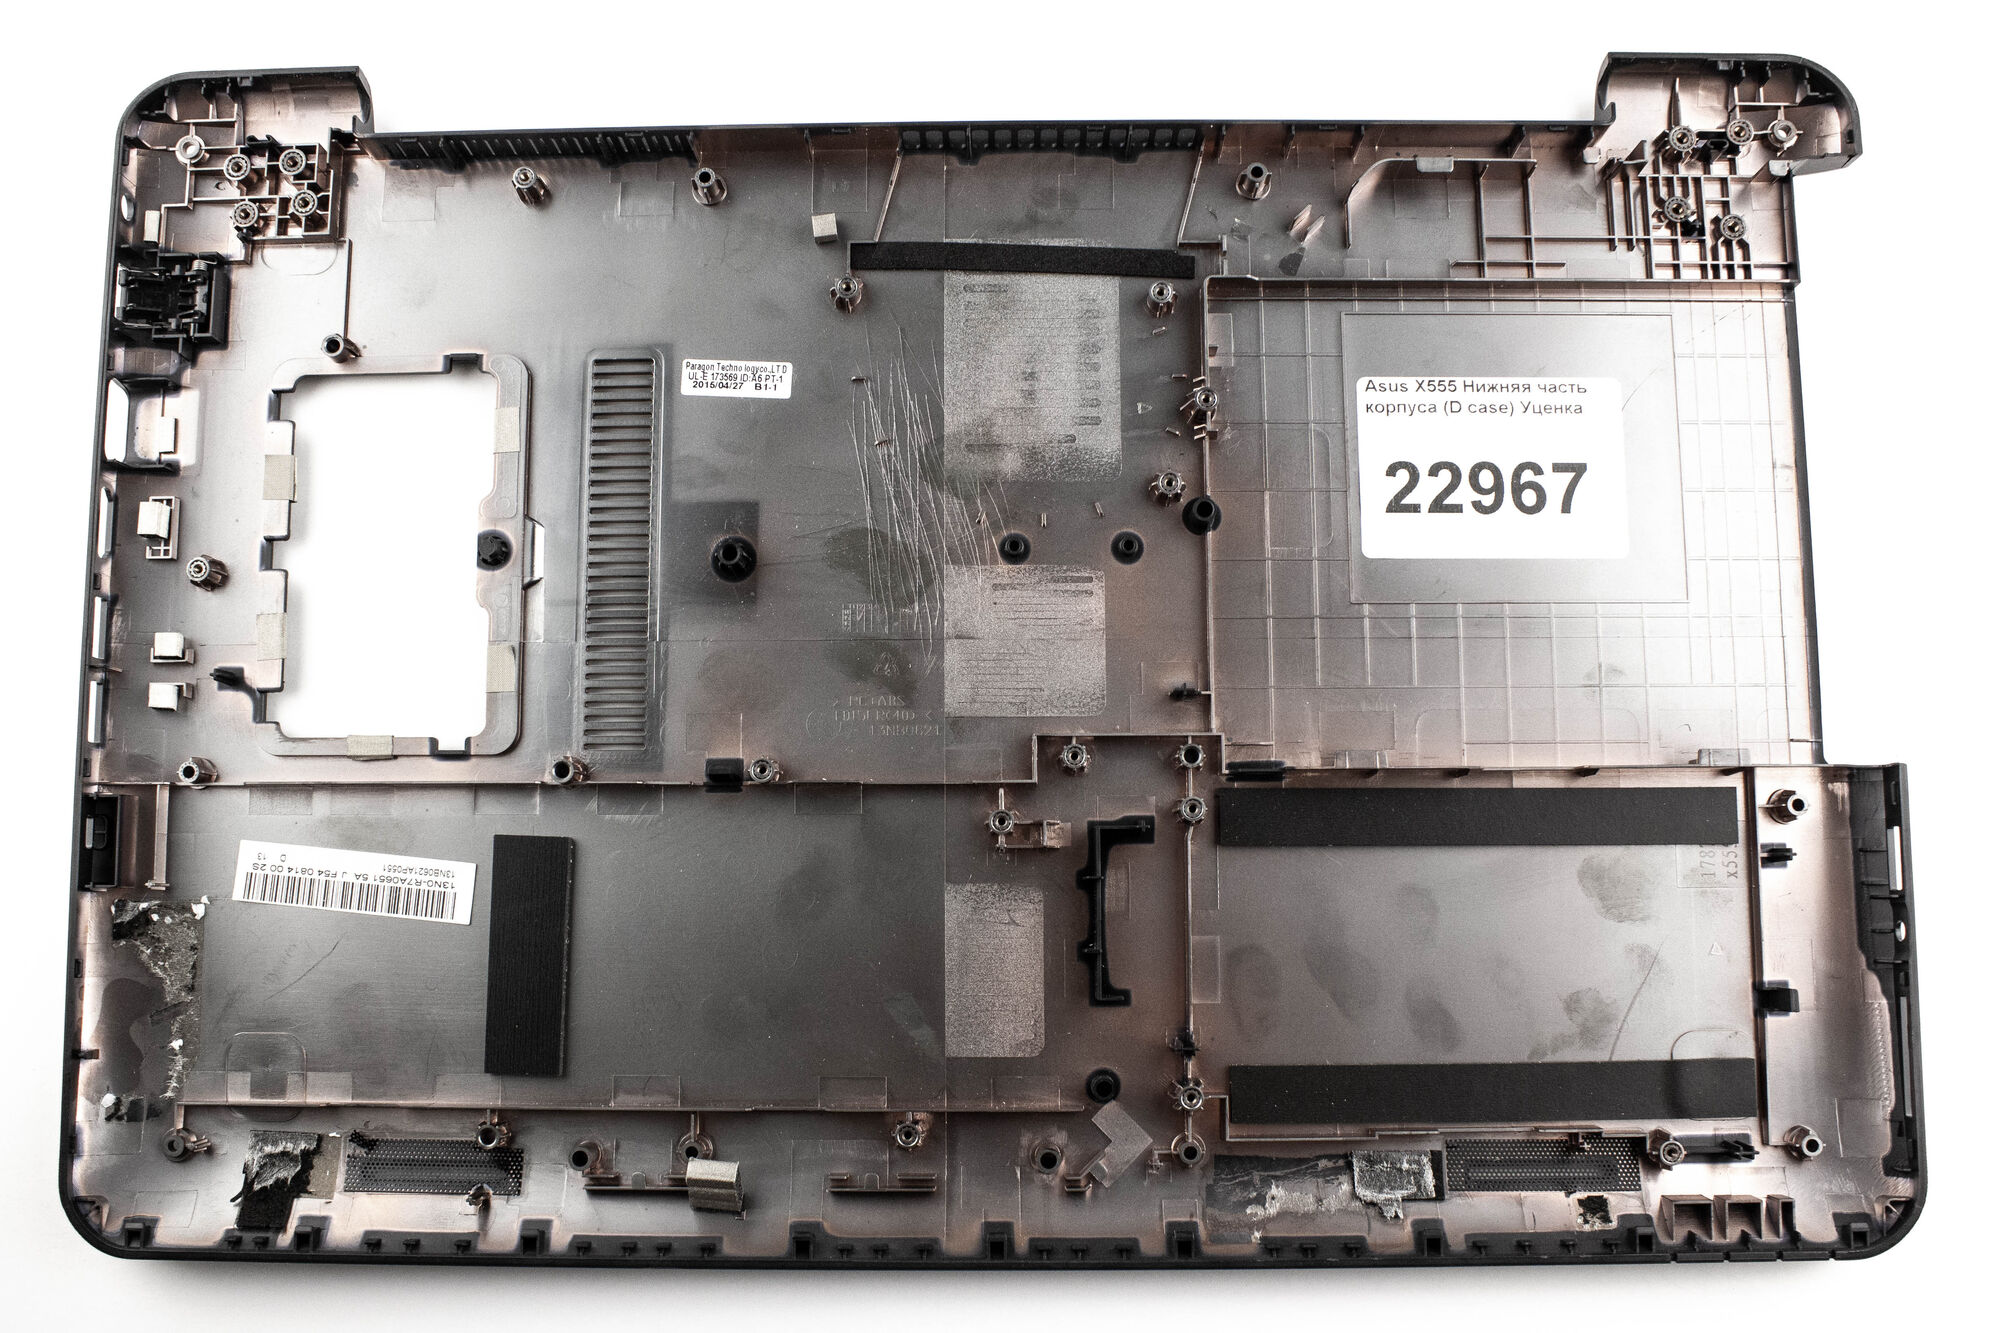 Asus X555 Нижняя часть корпуса (D case) уценка